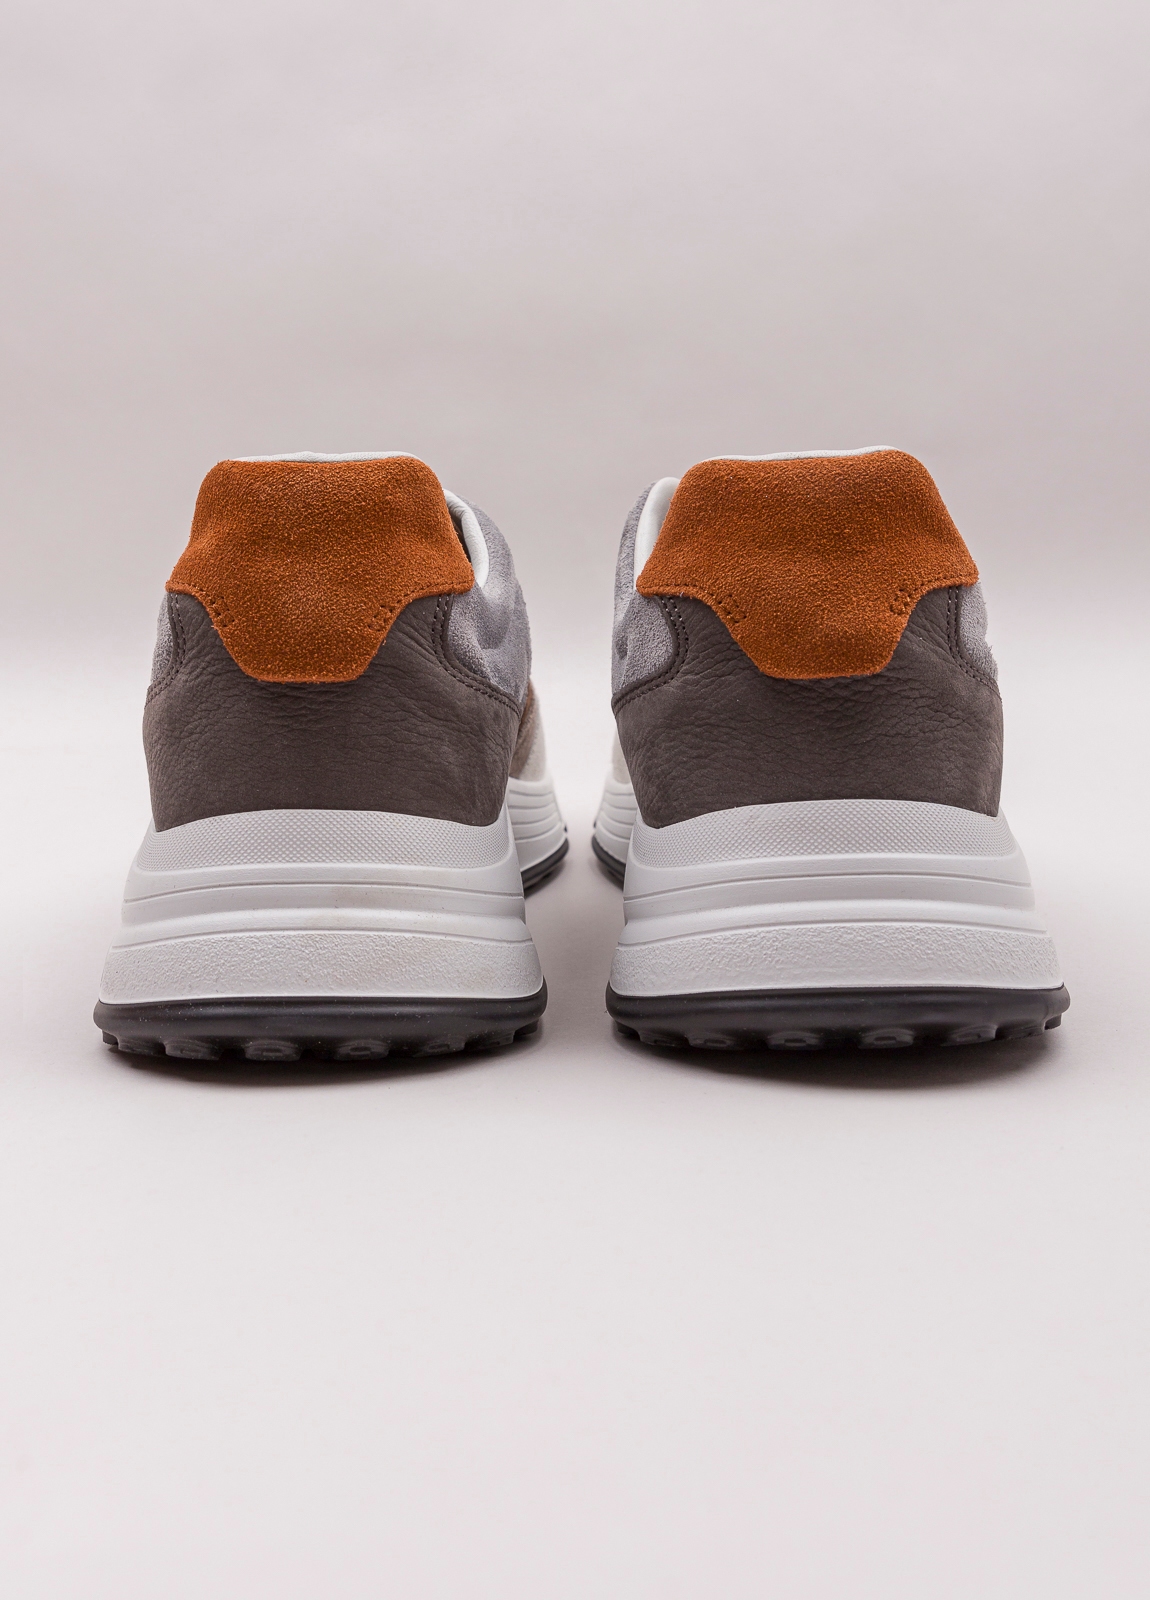 Zapatillas deportivas HOGAN blanco, gris y marrón - Ítem2